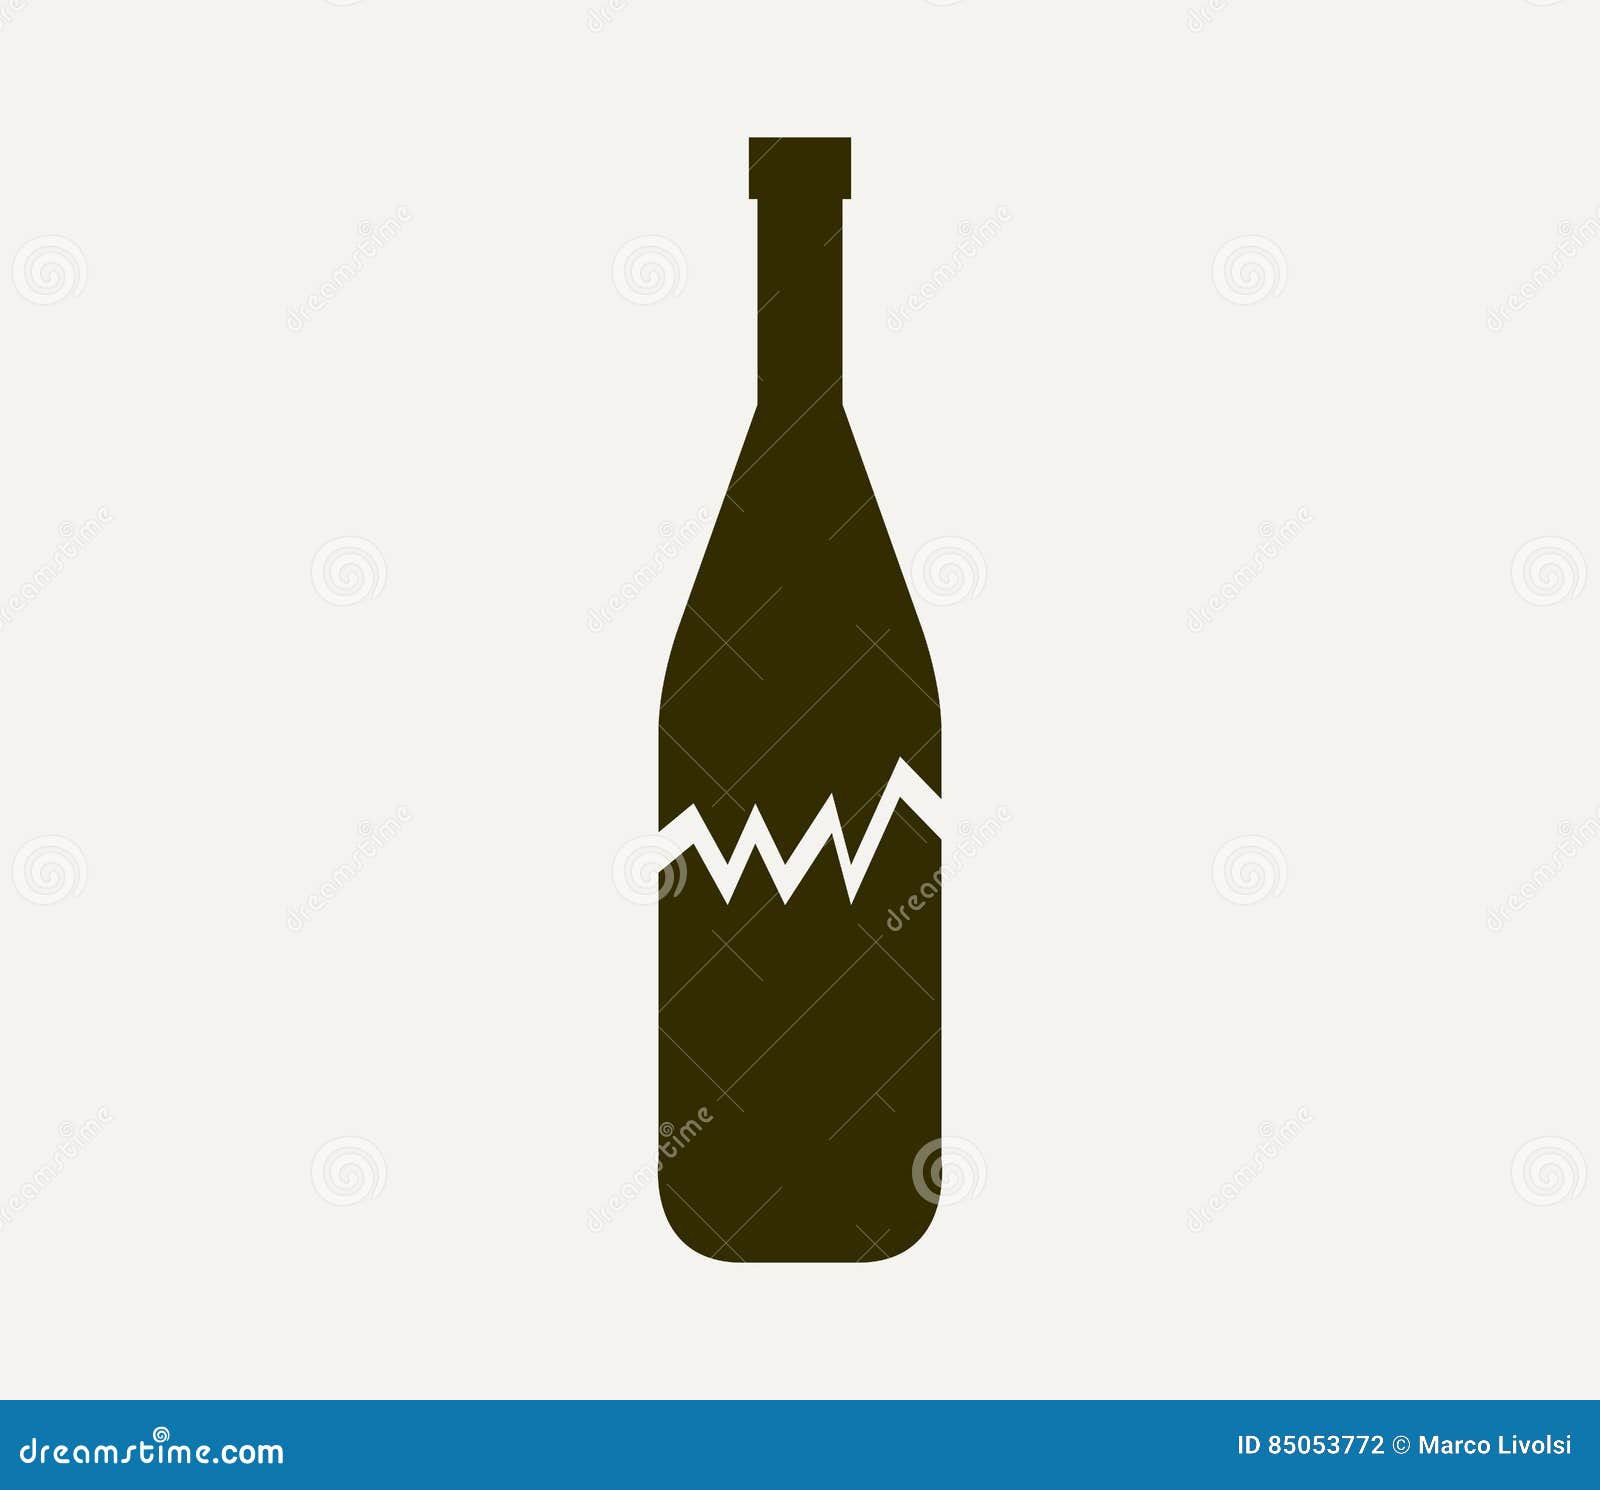 Broken Bottle Icon Illustrated Stock Illustration - Illustration of